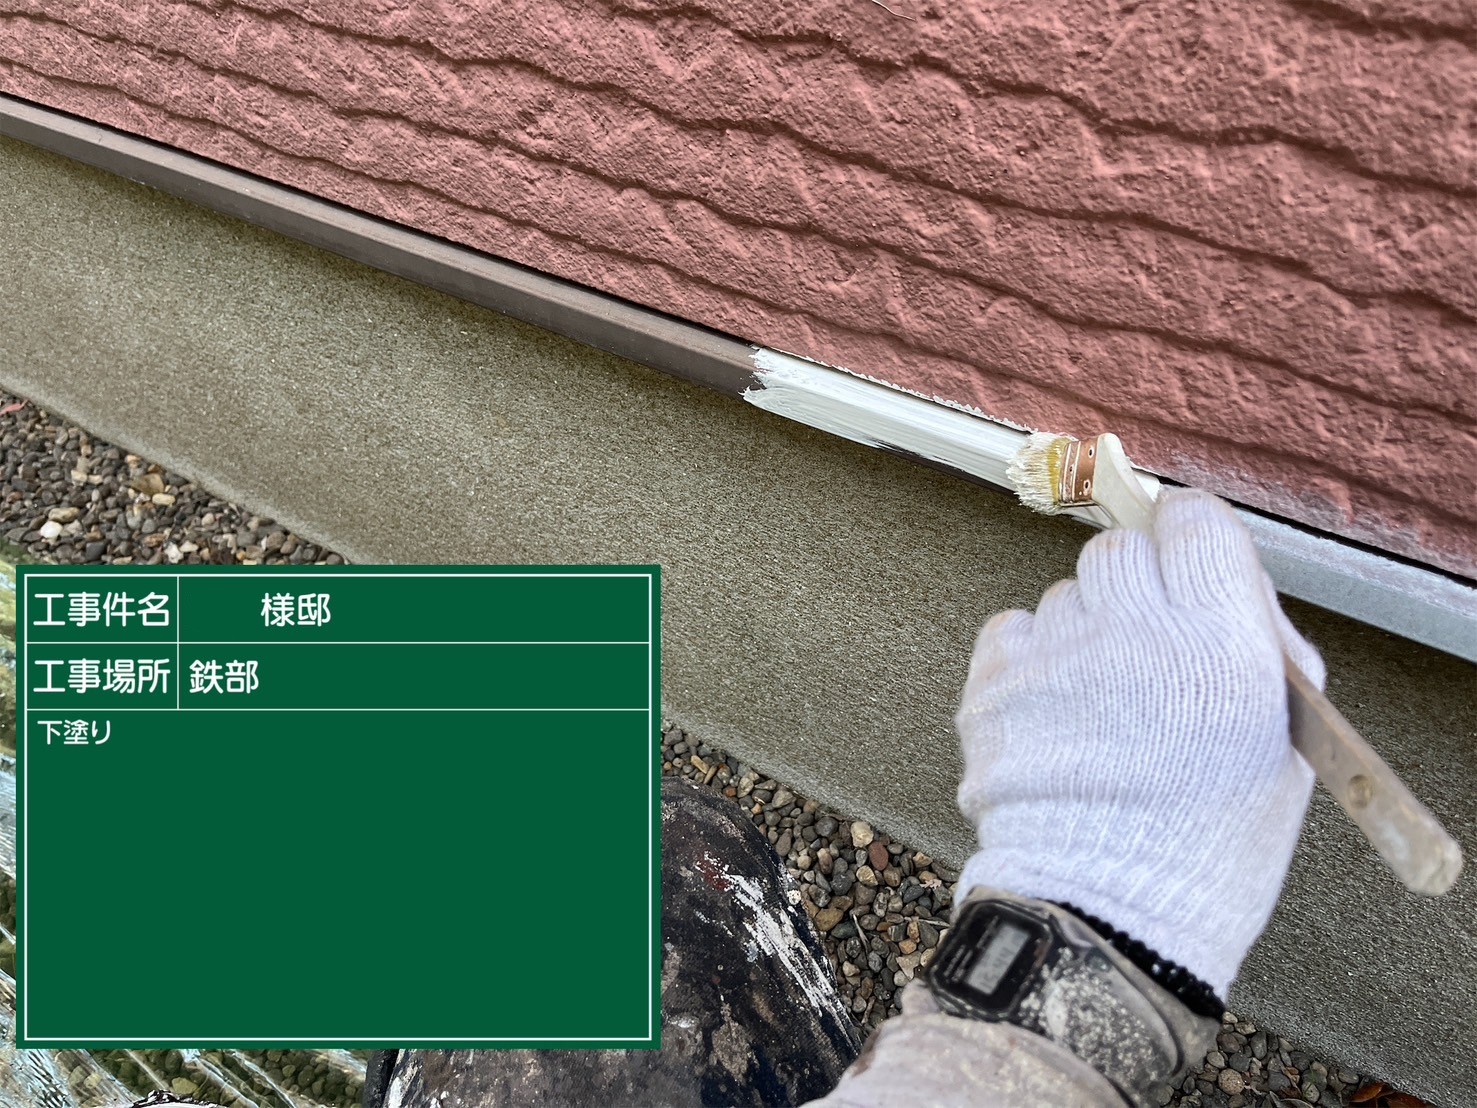 佐賀県三養基郡基山町けやき台のO様邸で超高耐久のプレマテックス社タテイルαを使用した外壁塗装とシーガードを使用したコロニアルネオ向けの屋根改修工事を行っていきます。5/14着工です。【HPより】